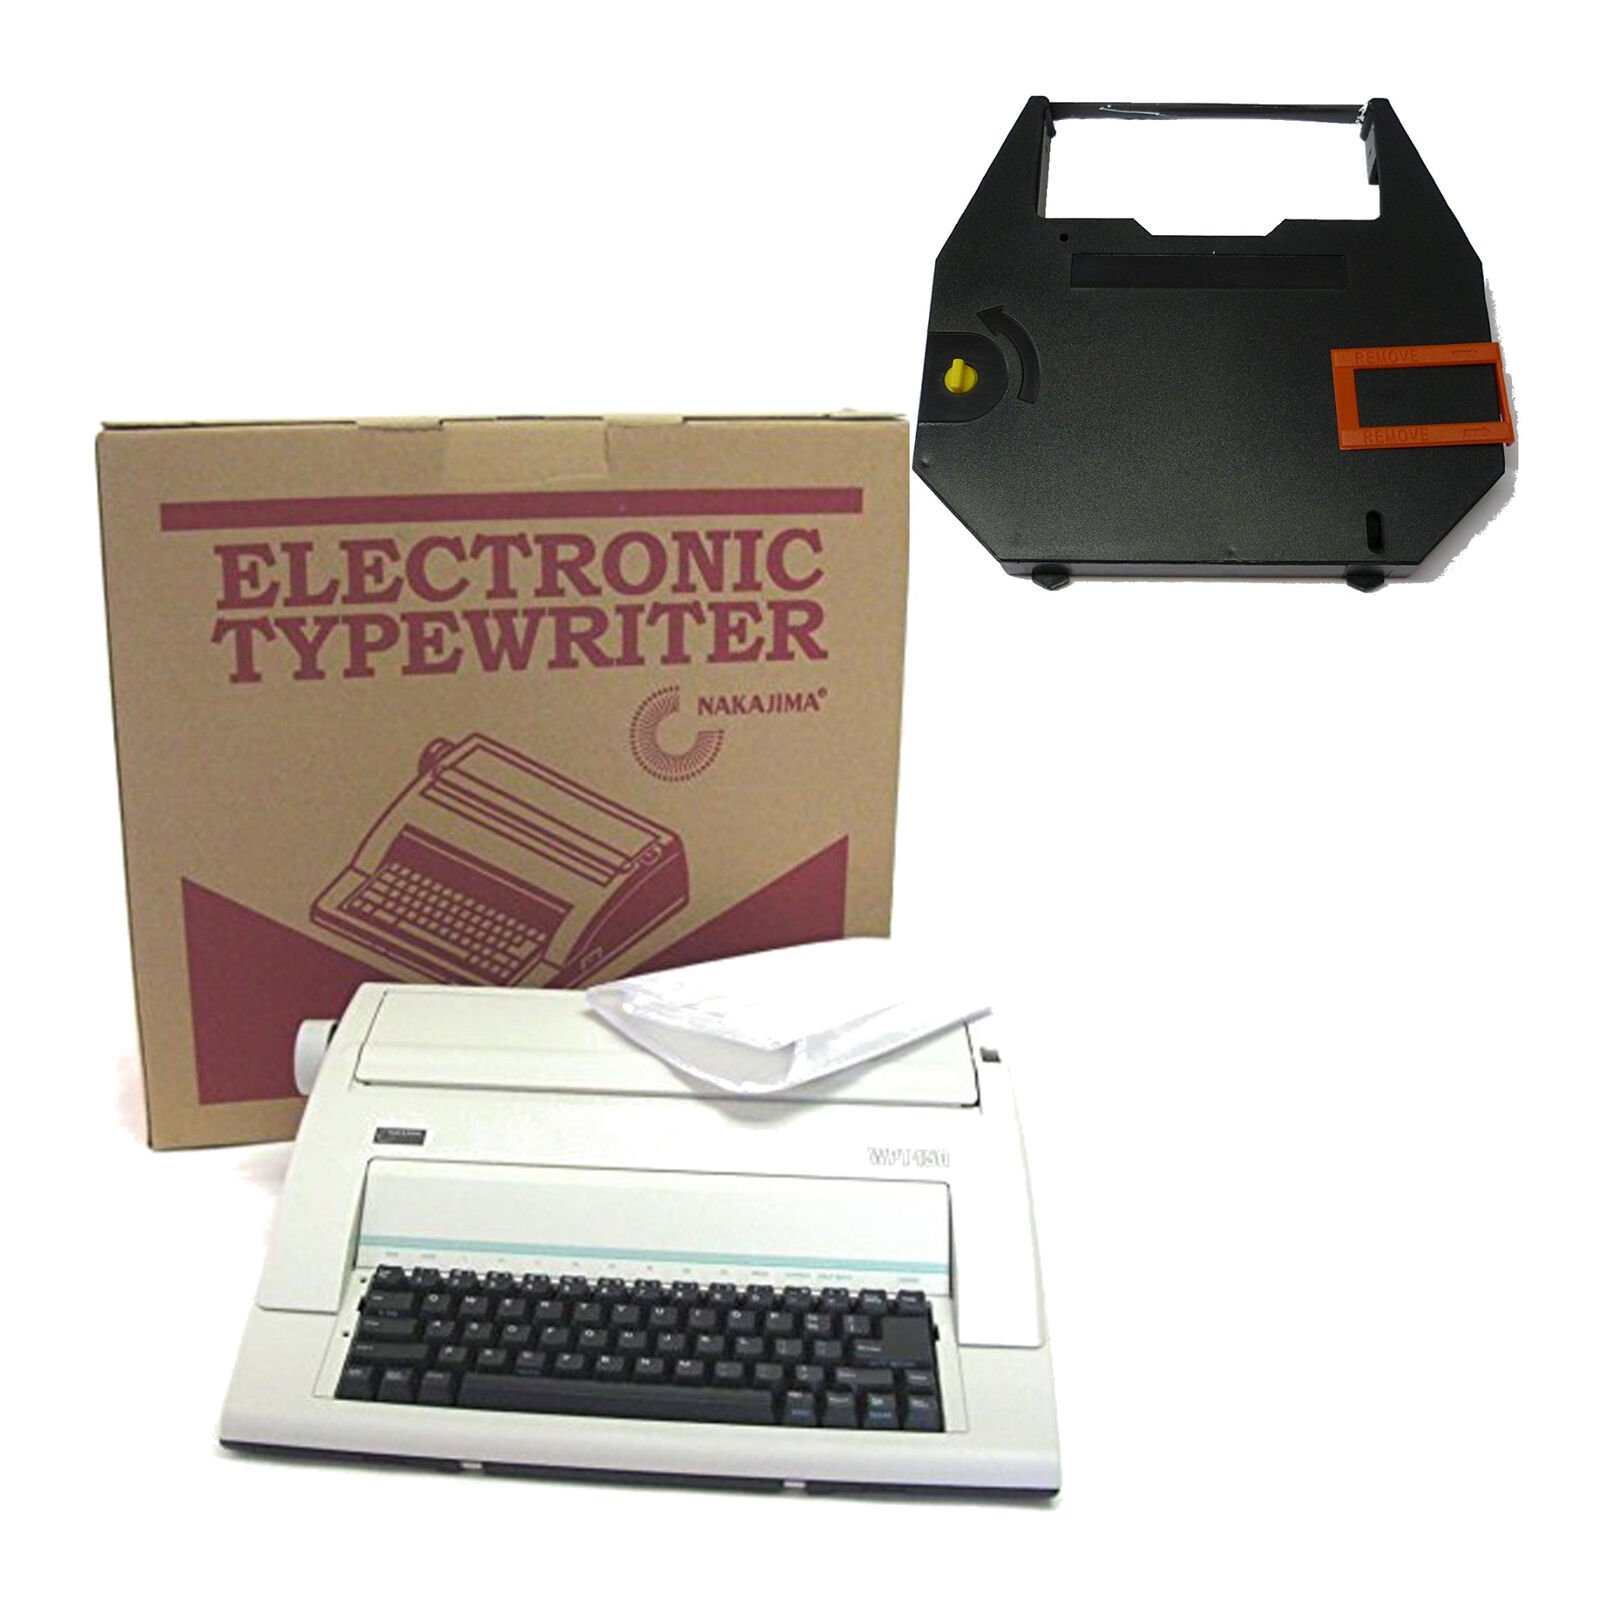 Nakajima WPT150 Portable Electronic Typewriter with Correct Film Ribbon Bundle